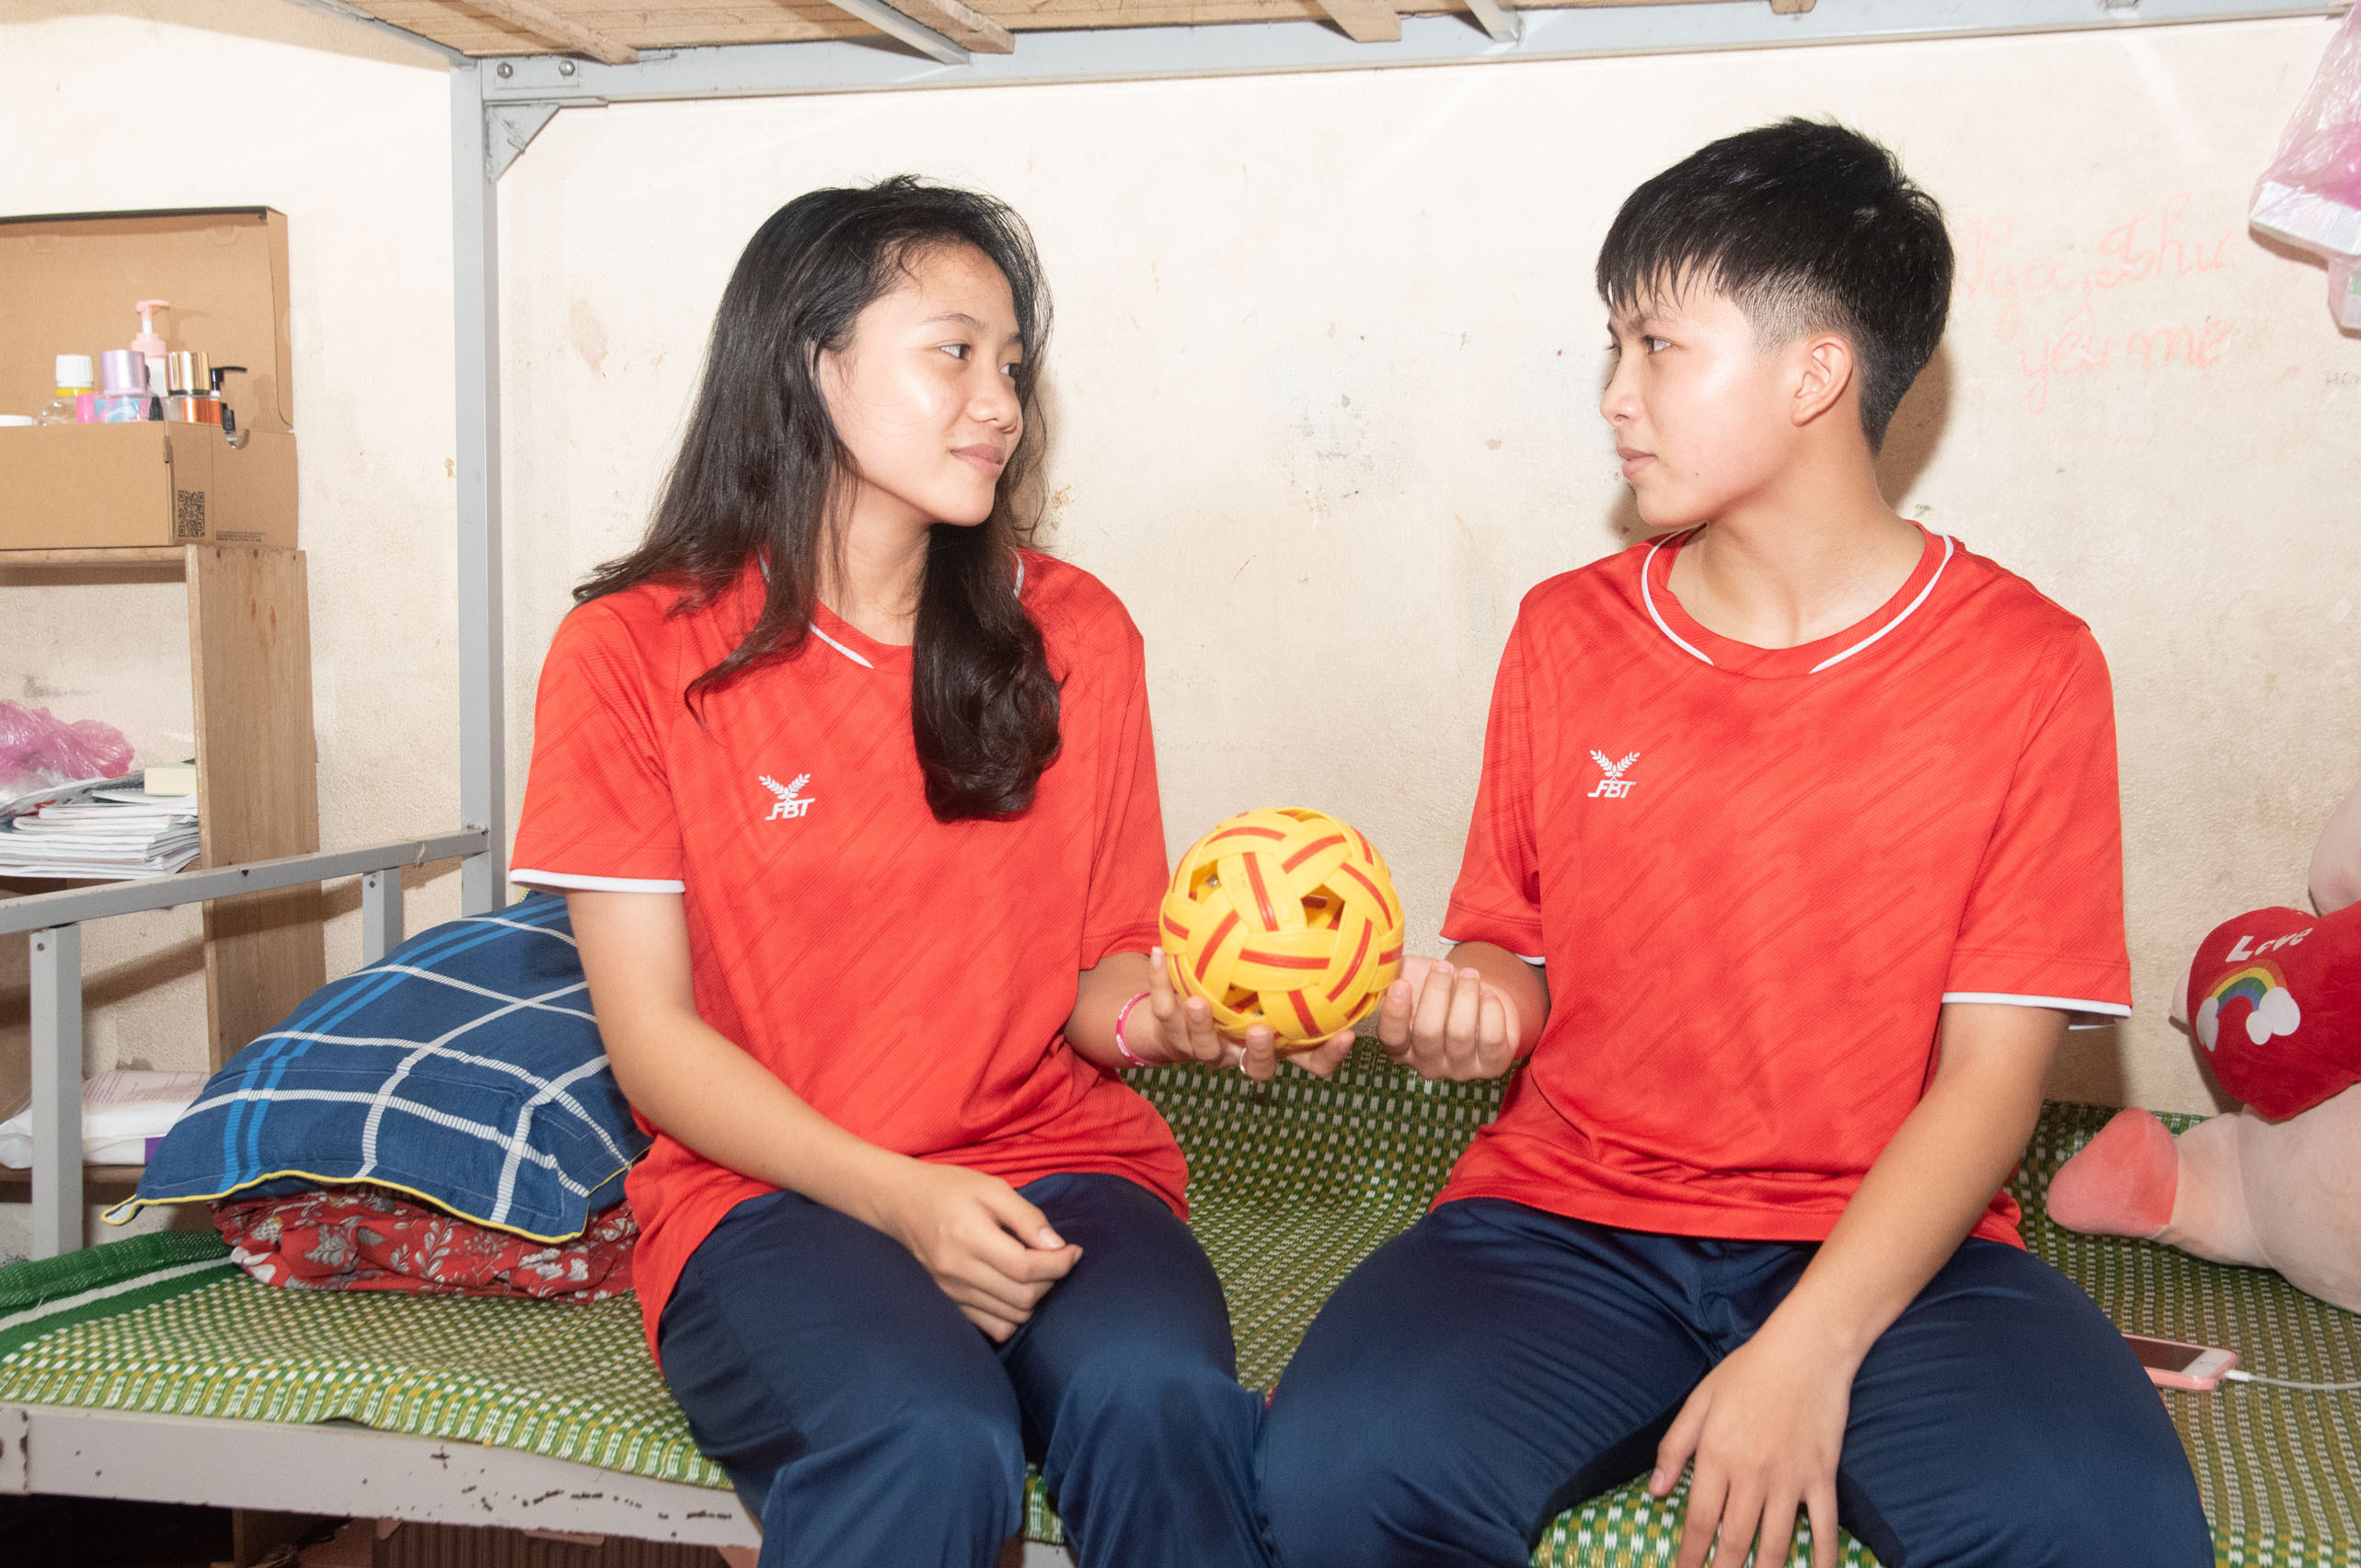 bna_Trương Thanh Thảo (trái) và Đào Thị Kim Oanh - bộ đôi vận động viên cầu mây trẻ triển vọng của Nghệ An (2).jpg